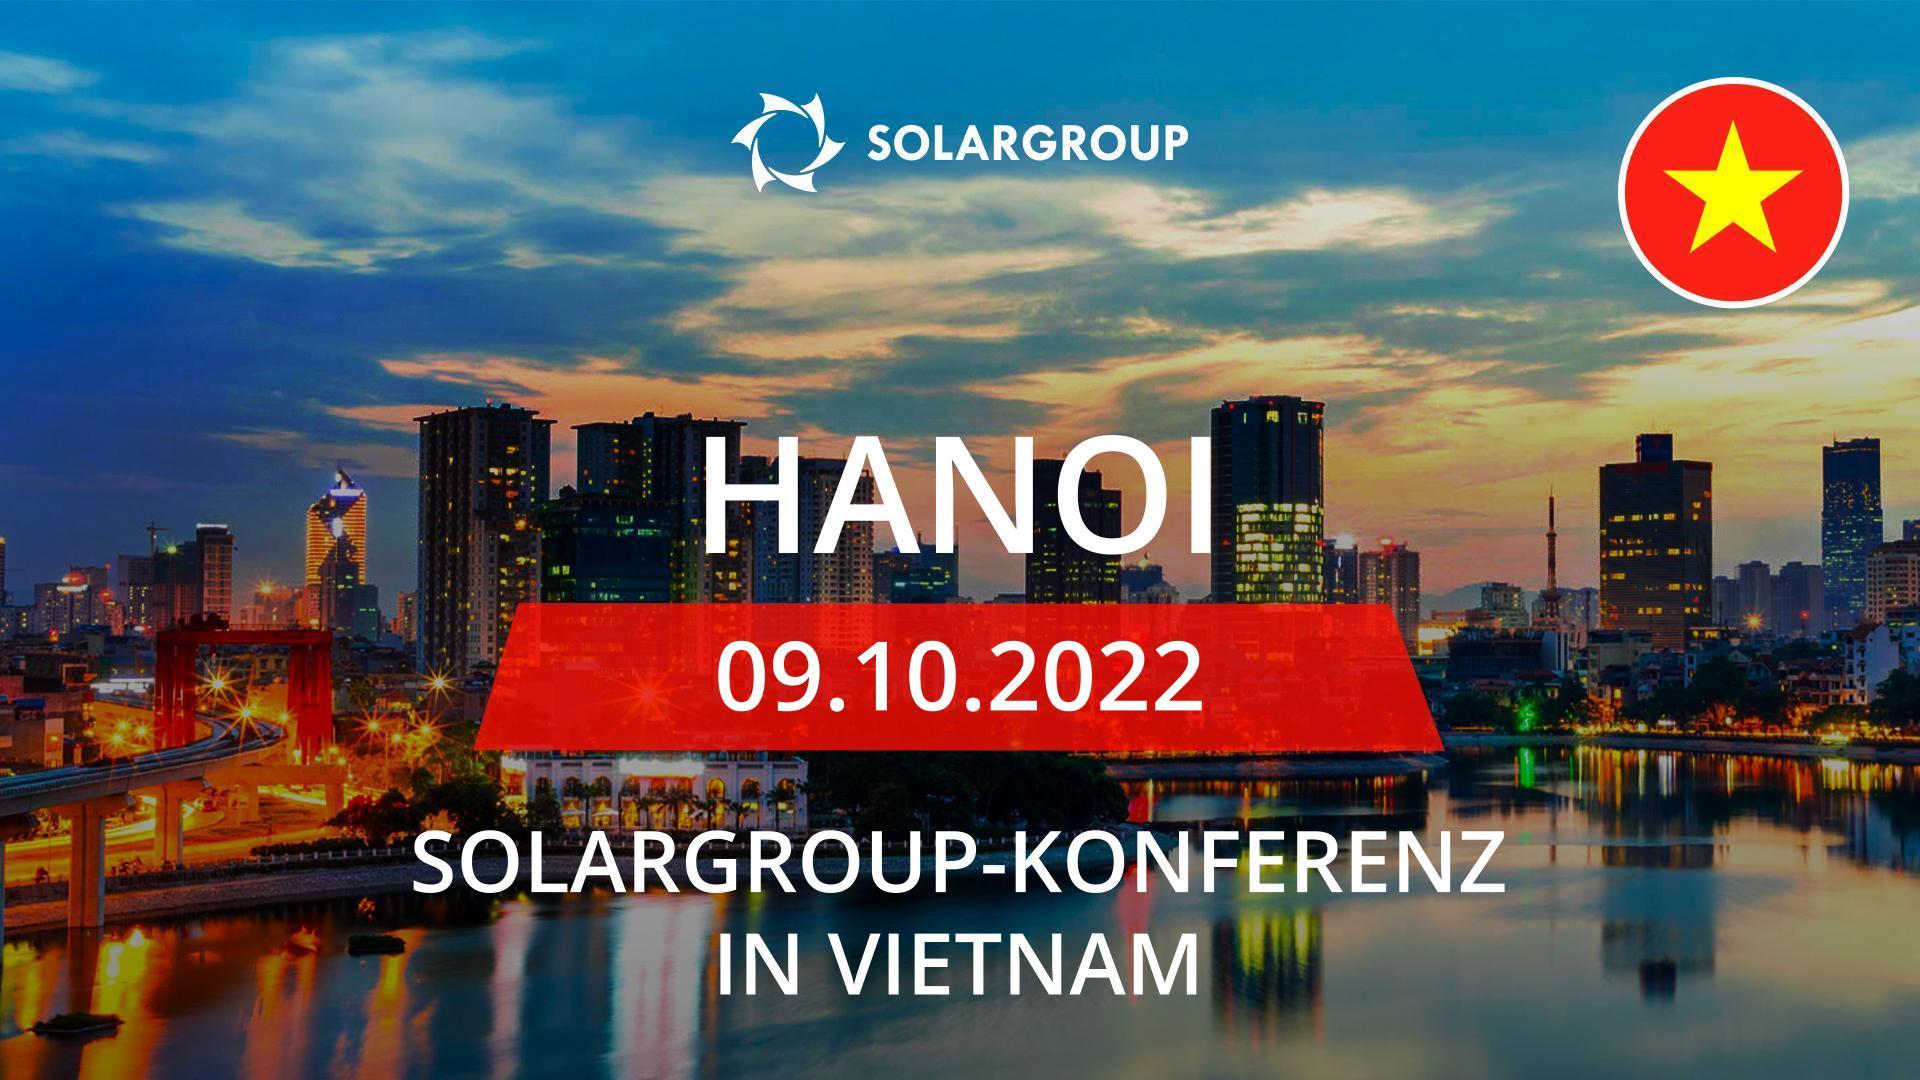 SOLARGROUP-Konferenz in Vietnam